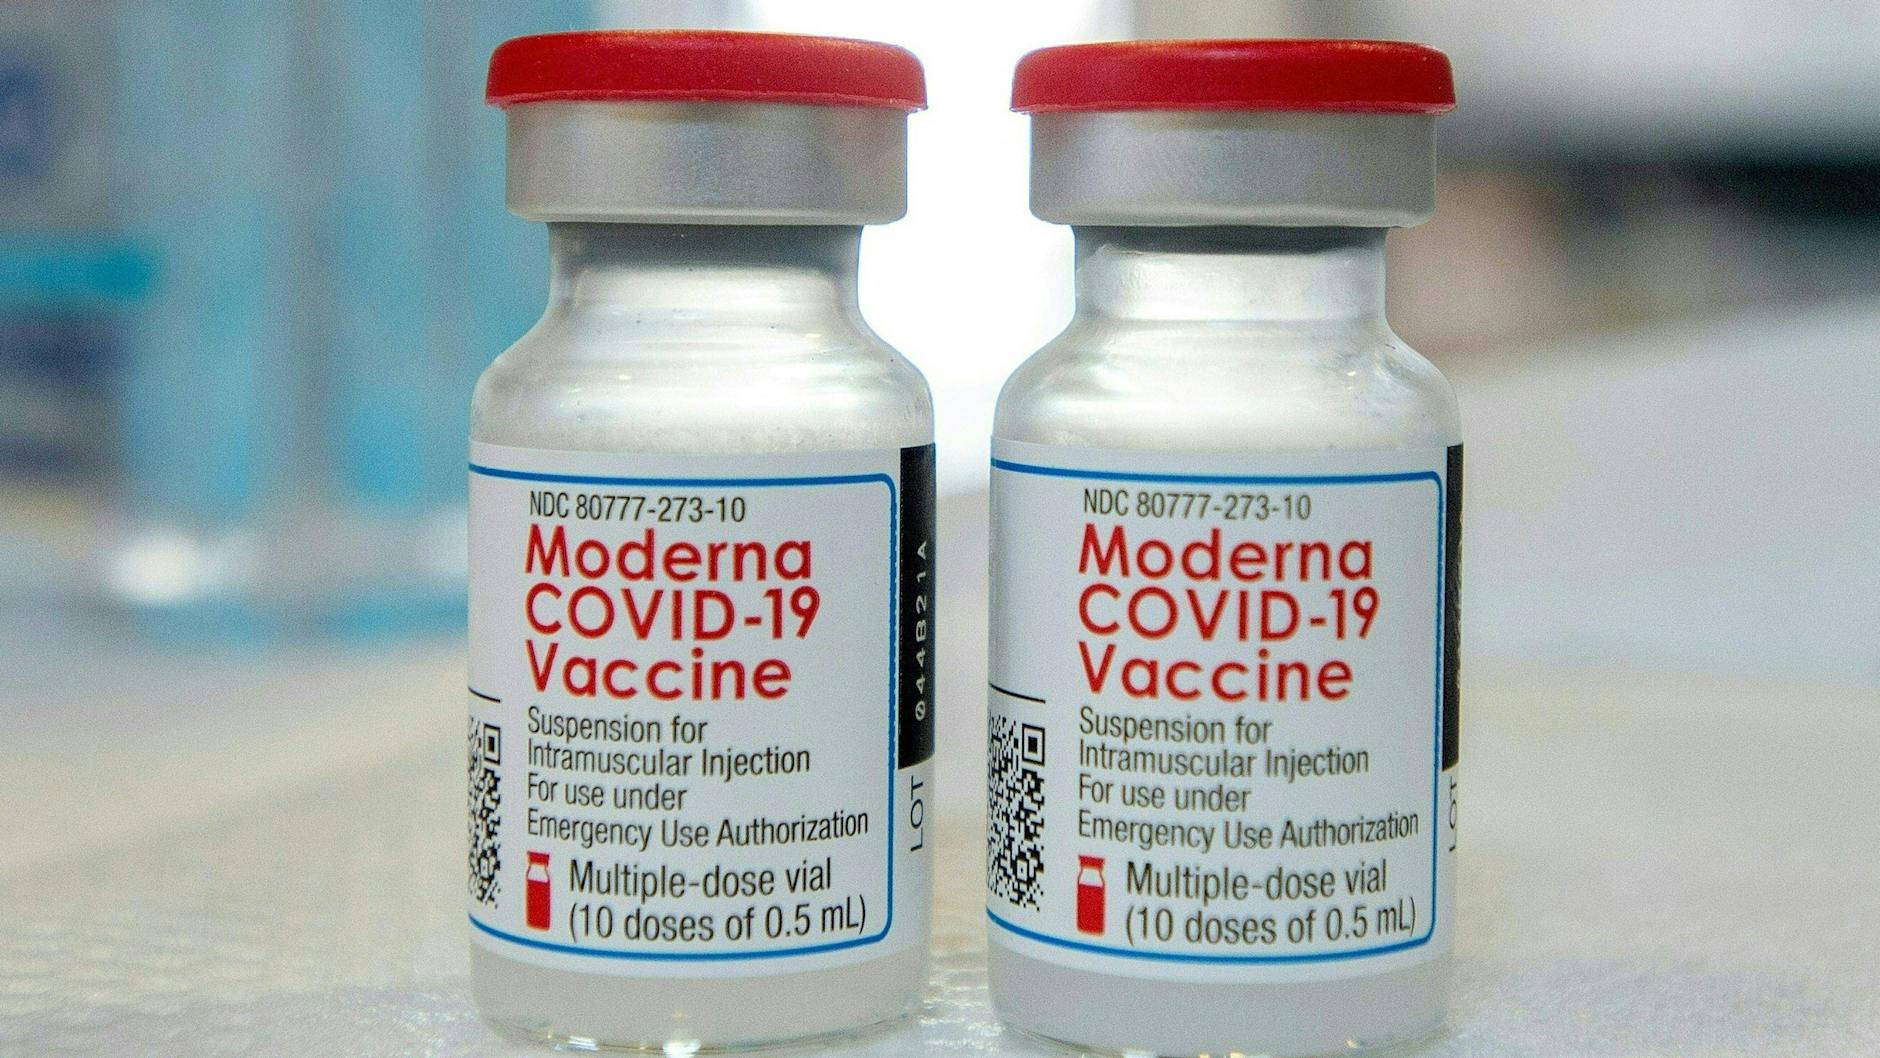 Der Impfstoff-Hersteller Moderna strebt eine EU-Zulassung seines Vakzins für Kinder ab sechs Jahren an. Aber es gibt kritische Stimmen. (Symbolbild)